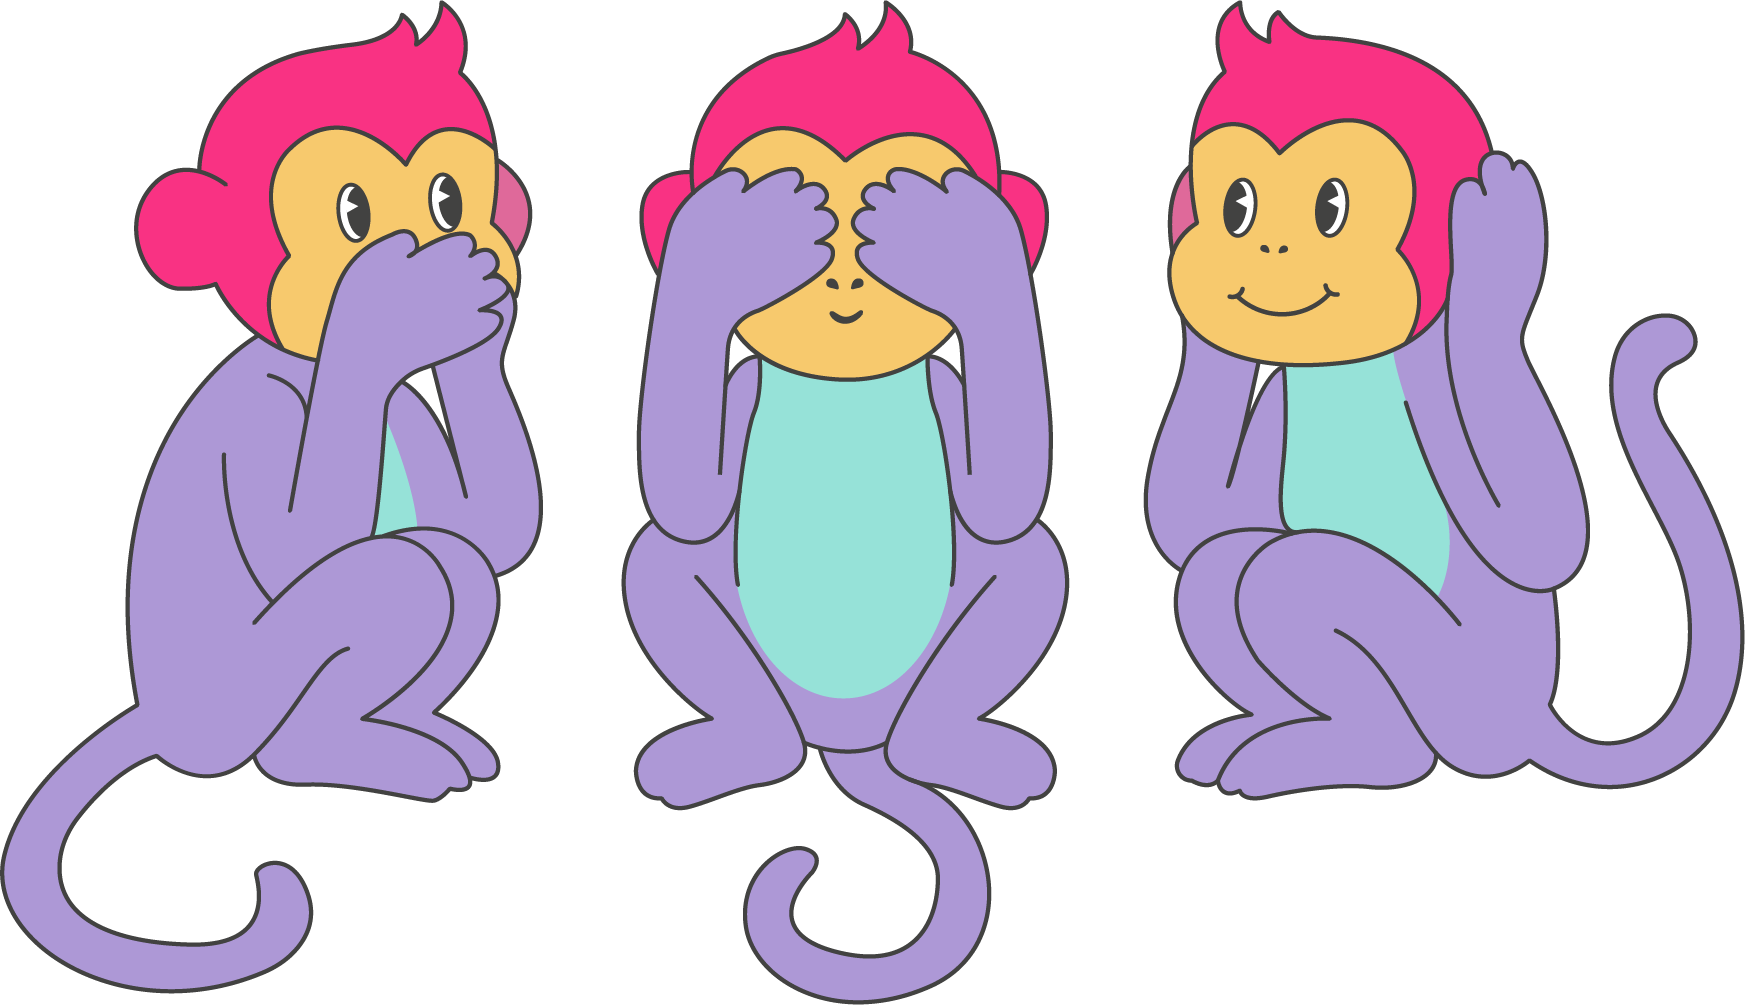 Icones de trois singes